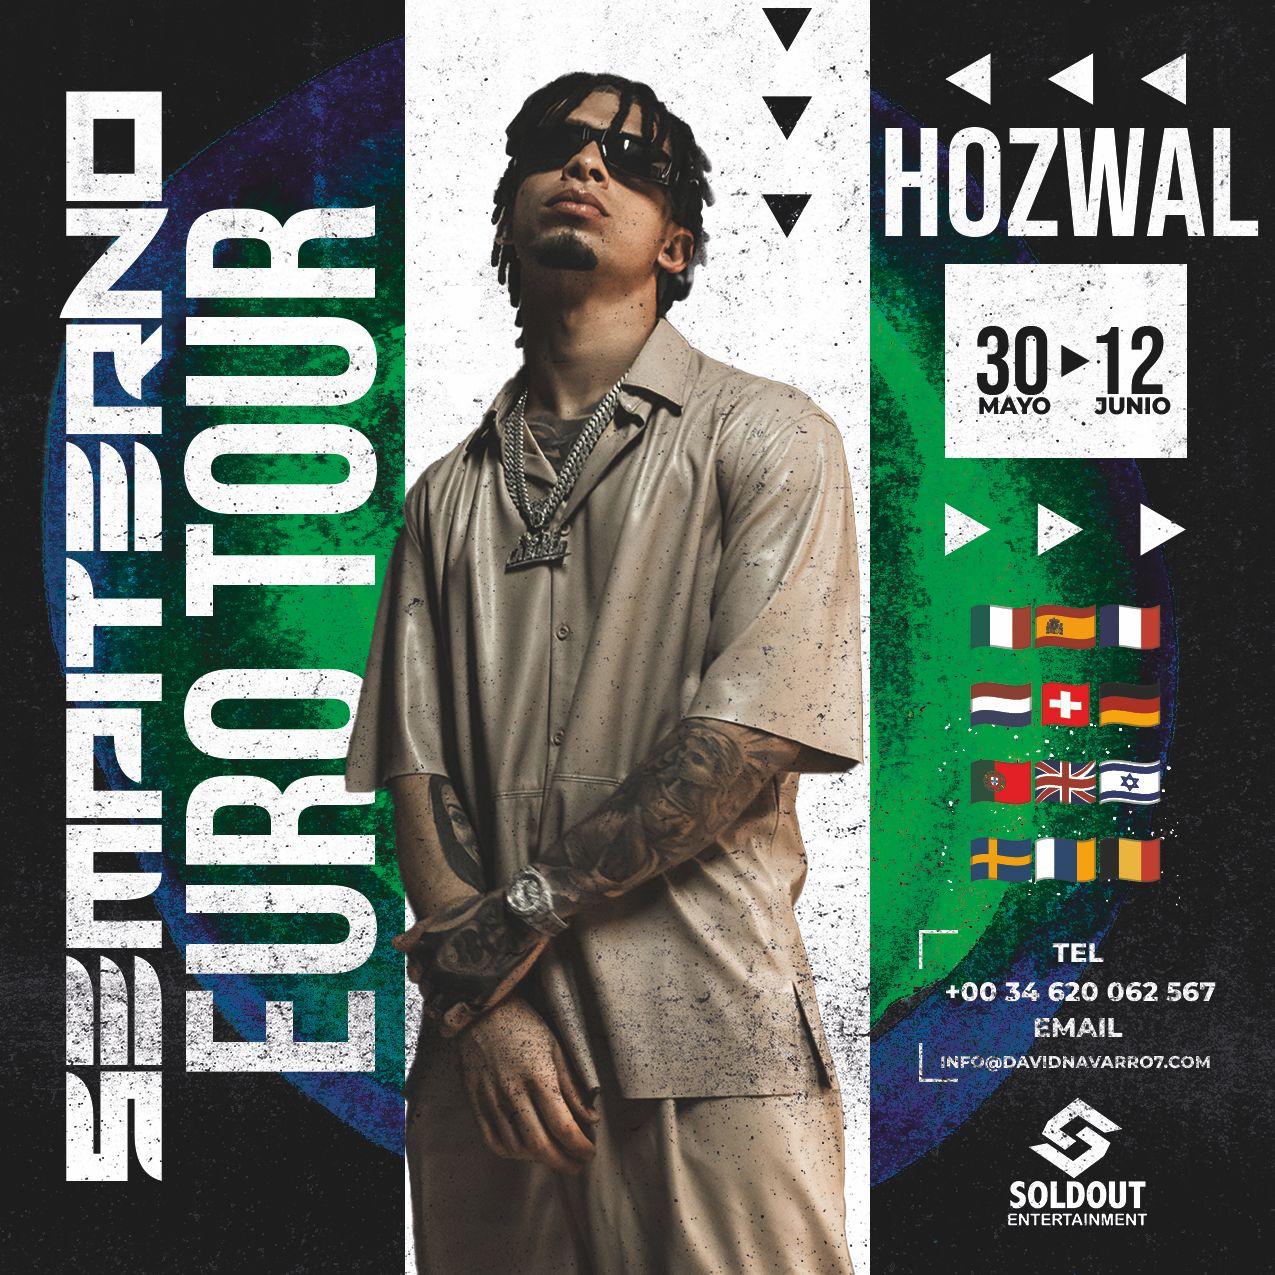 HOZWAL anuncia primera gira europea “Sempiterno Euro Tour”